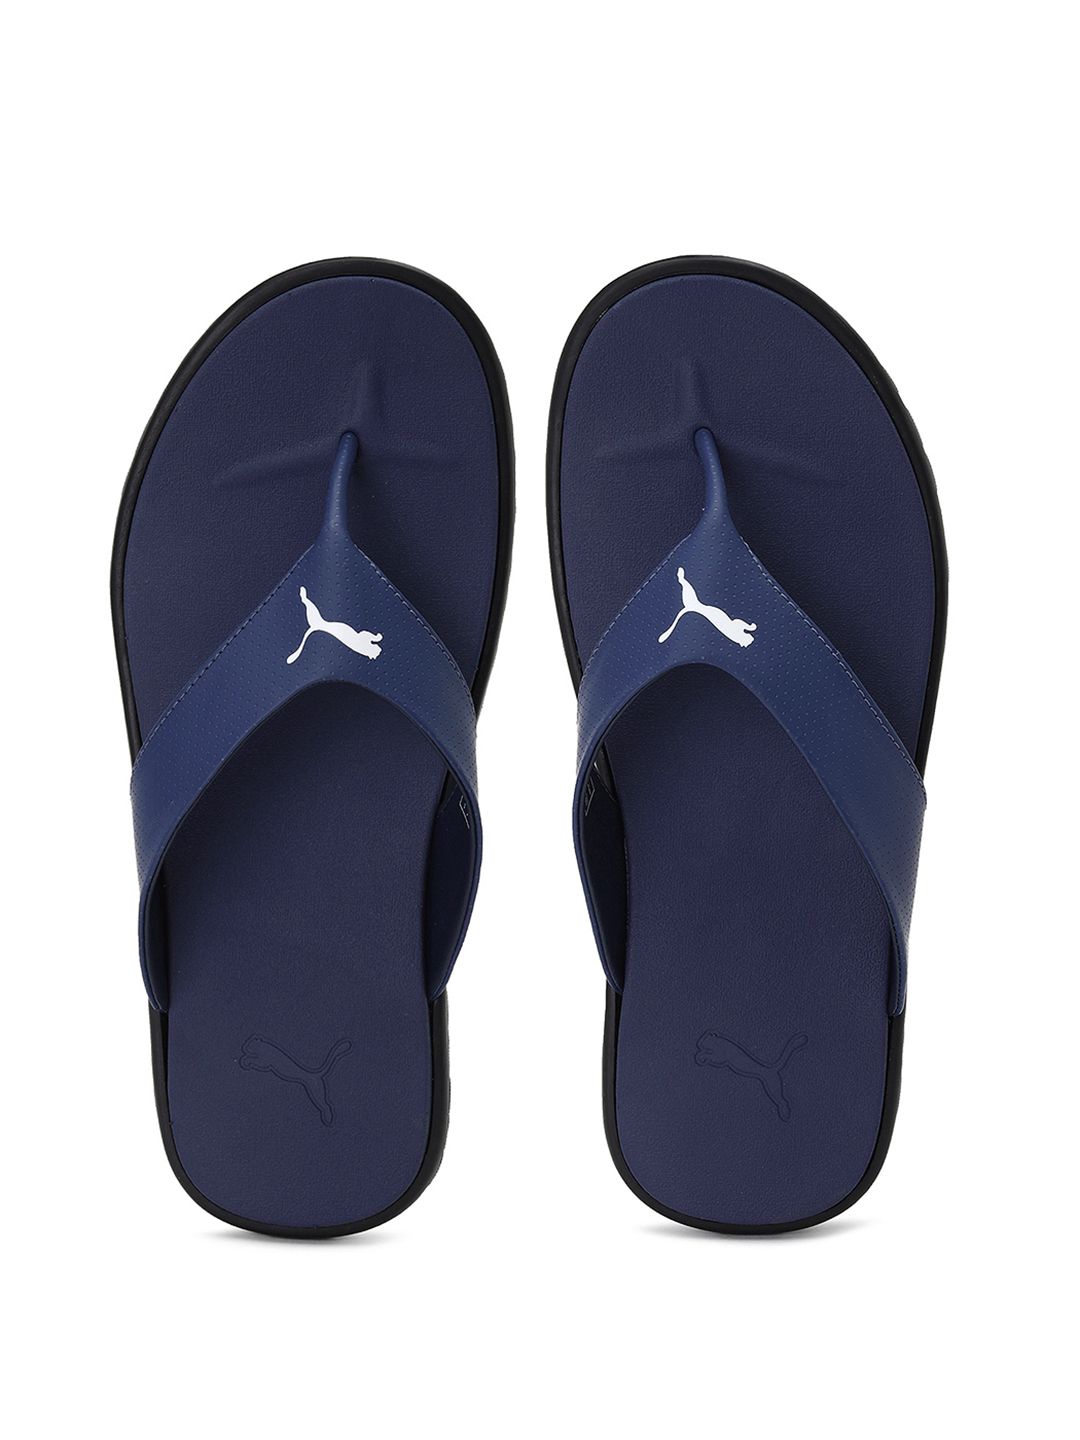 Puma Unisex Blue Galaxy Comfort Sandals Price in India